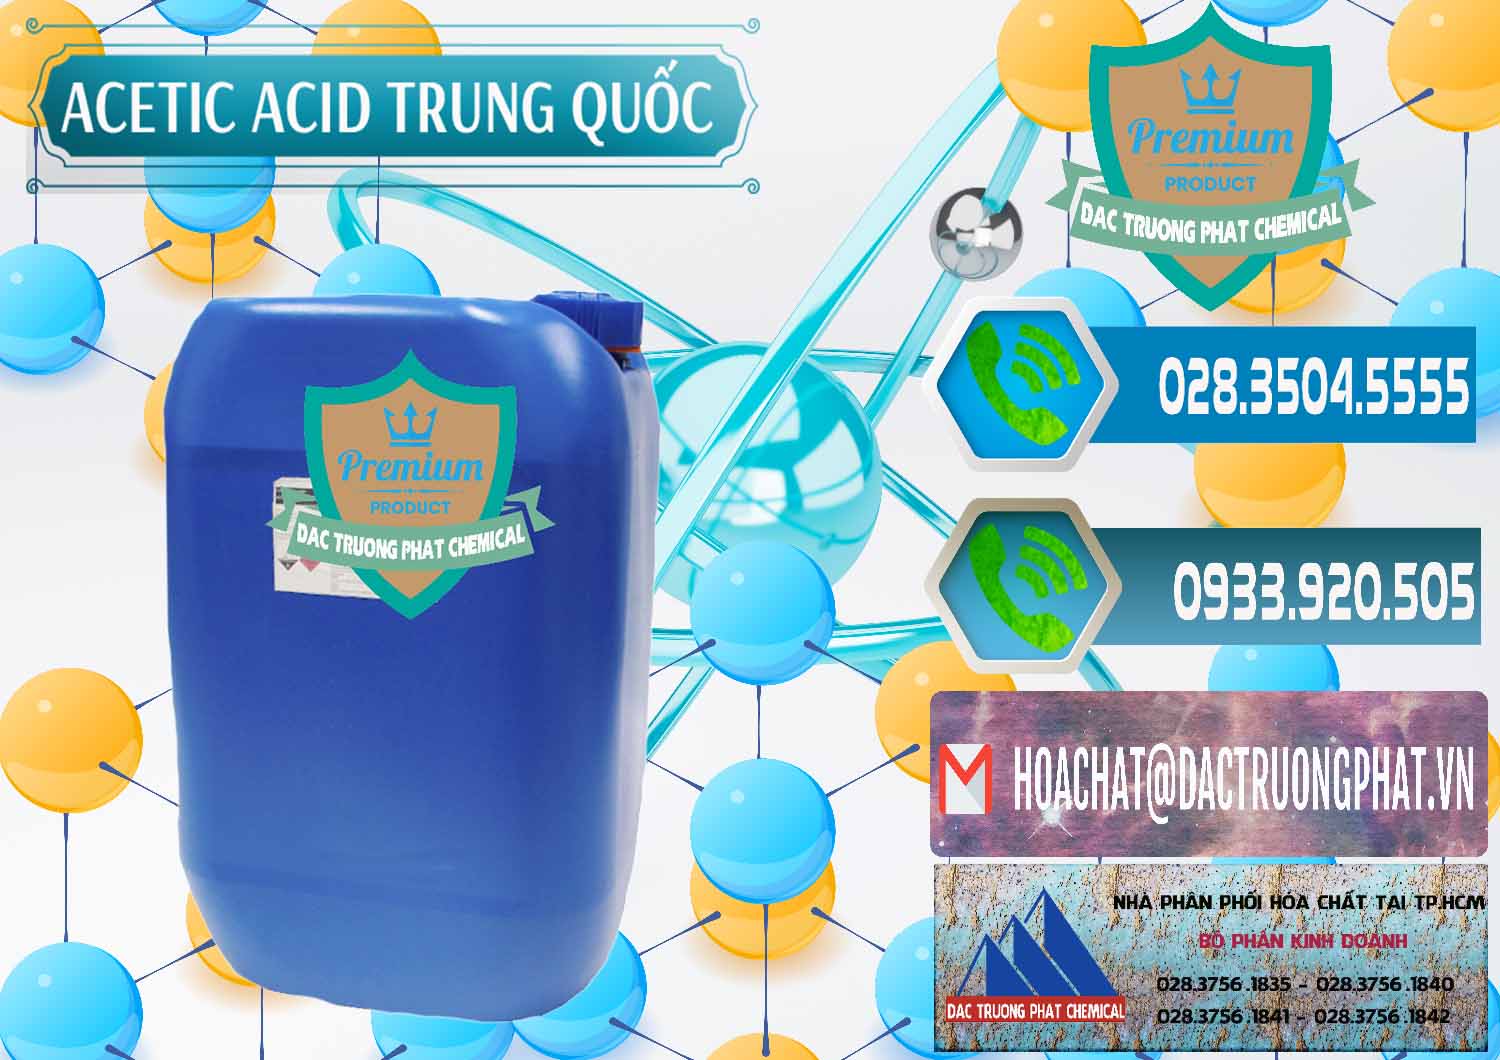 Cty chuyên cung ứng & bán Acetic Acid – Axit Acetic Trung Quốc China - 0358 - Cty chuyên cung cấp và nhập khẩu hóa chất tại TP.HCM - congtyhoachat.net